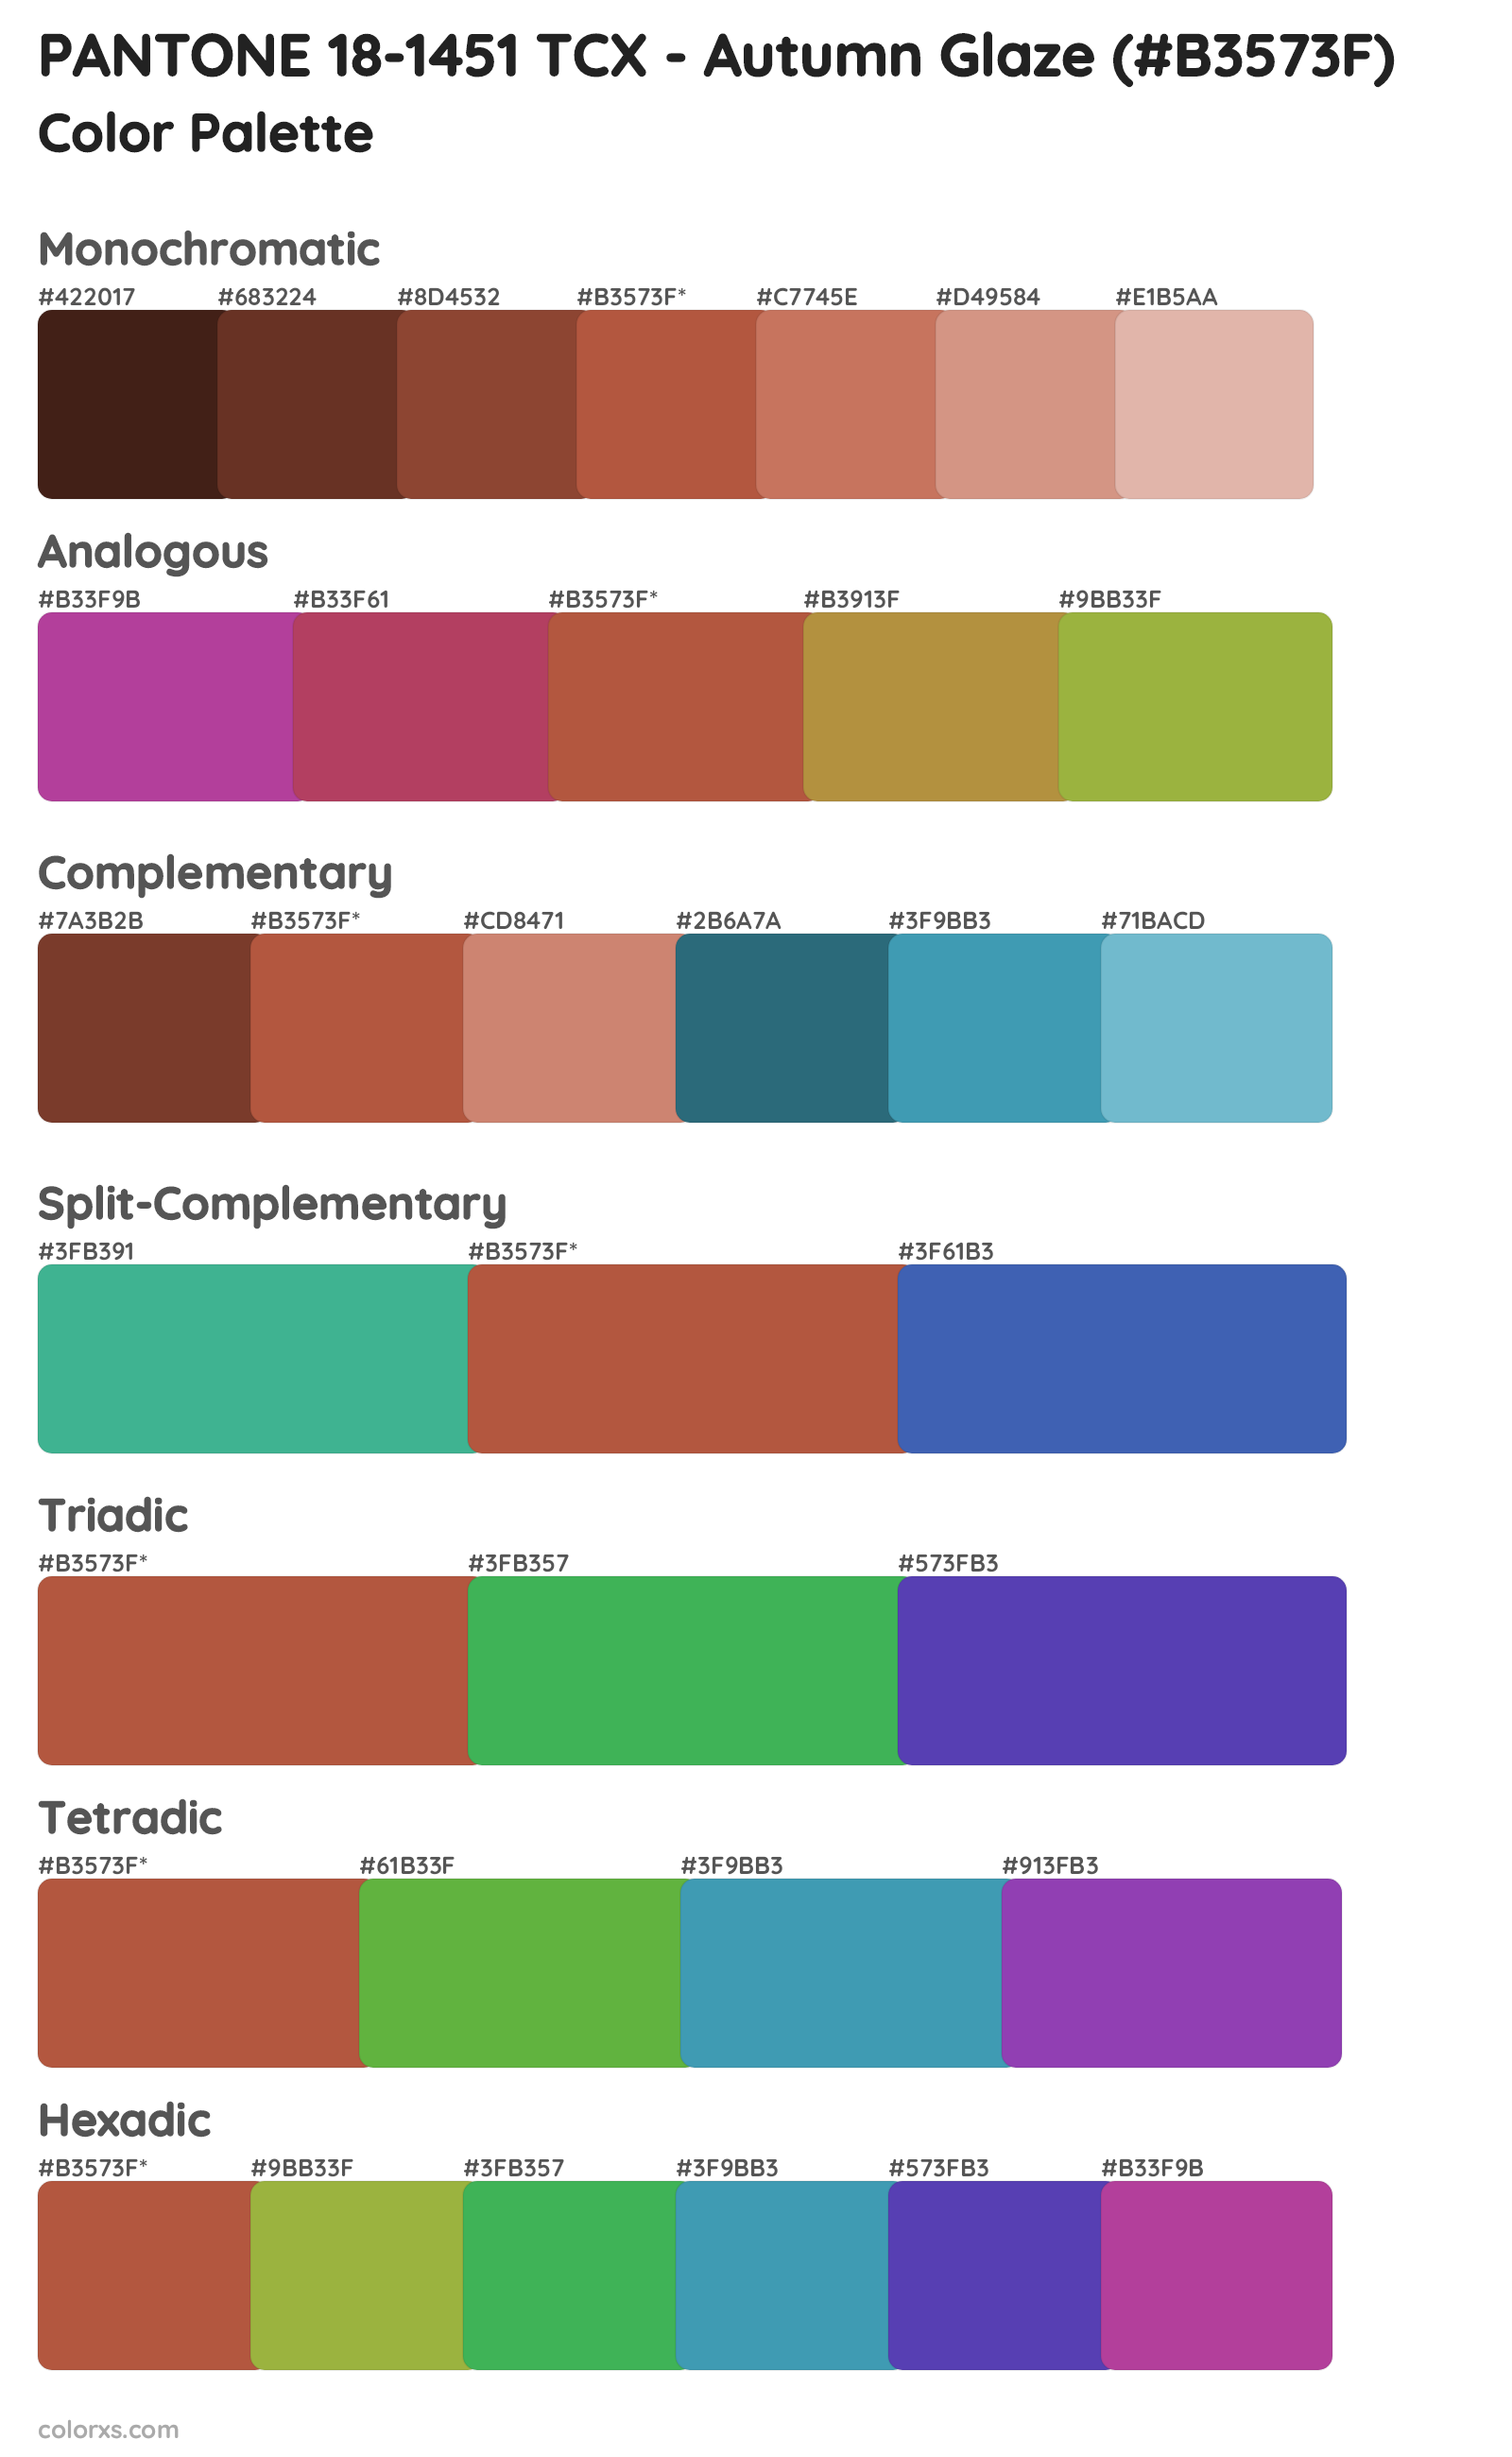 PANTONE 18-1451 TCX - Autumn Glaze Color Scheme Palettes